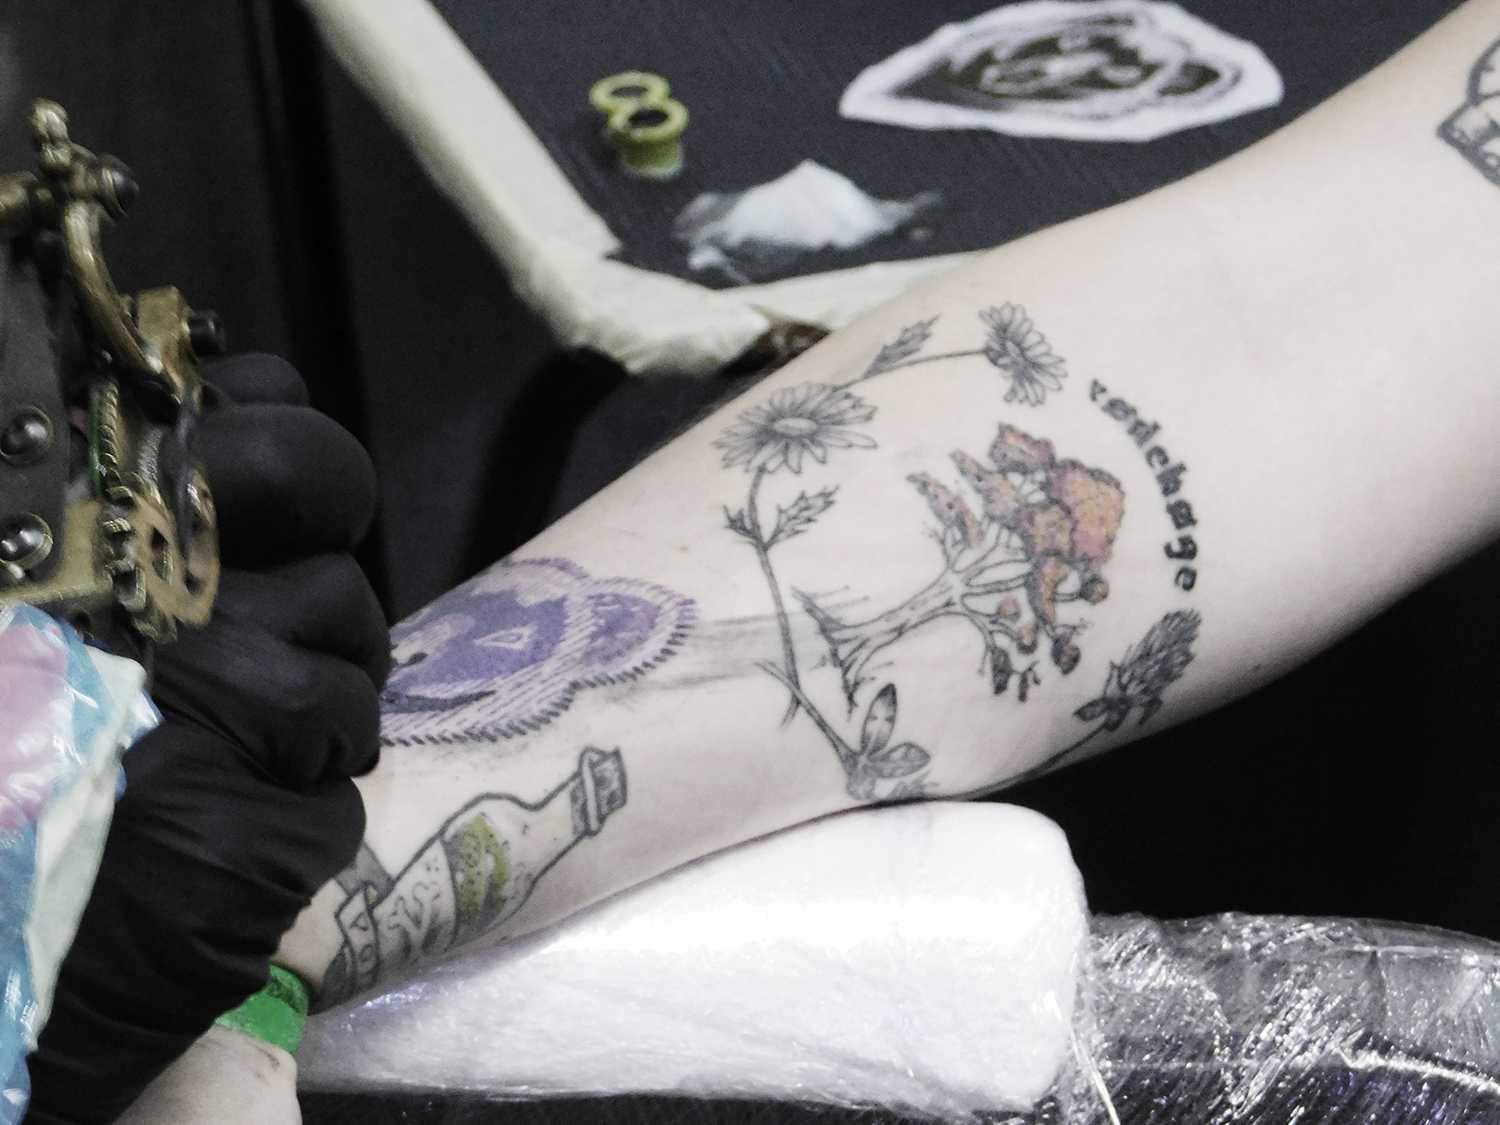 stencil bear tattoo on arm